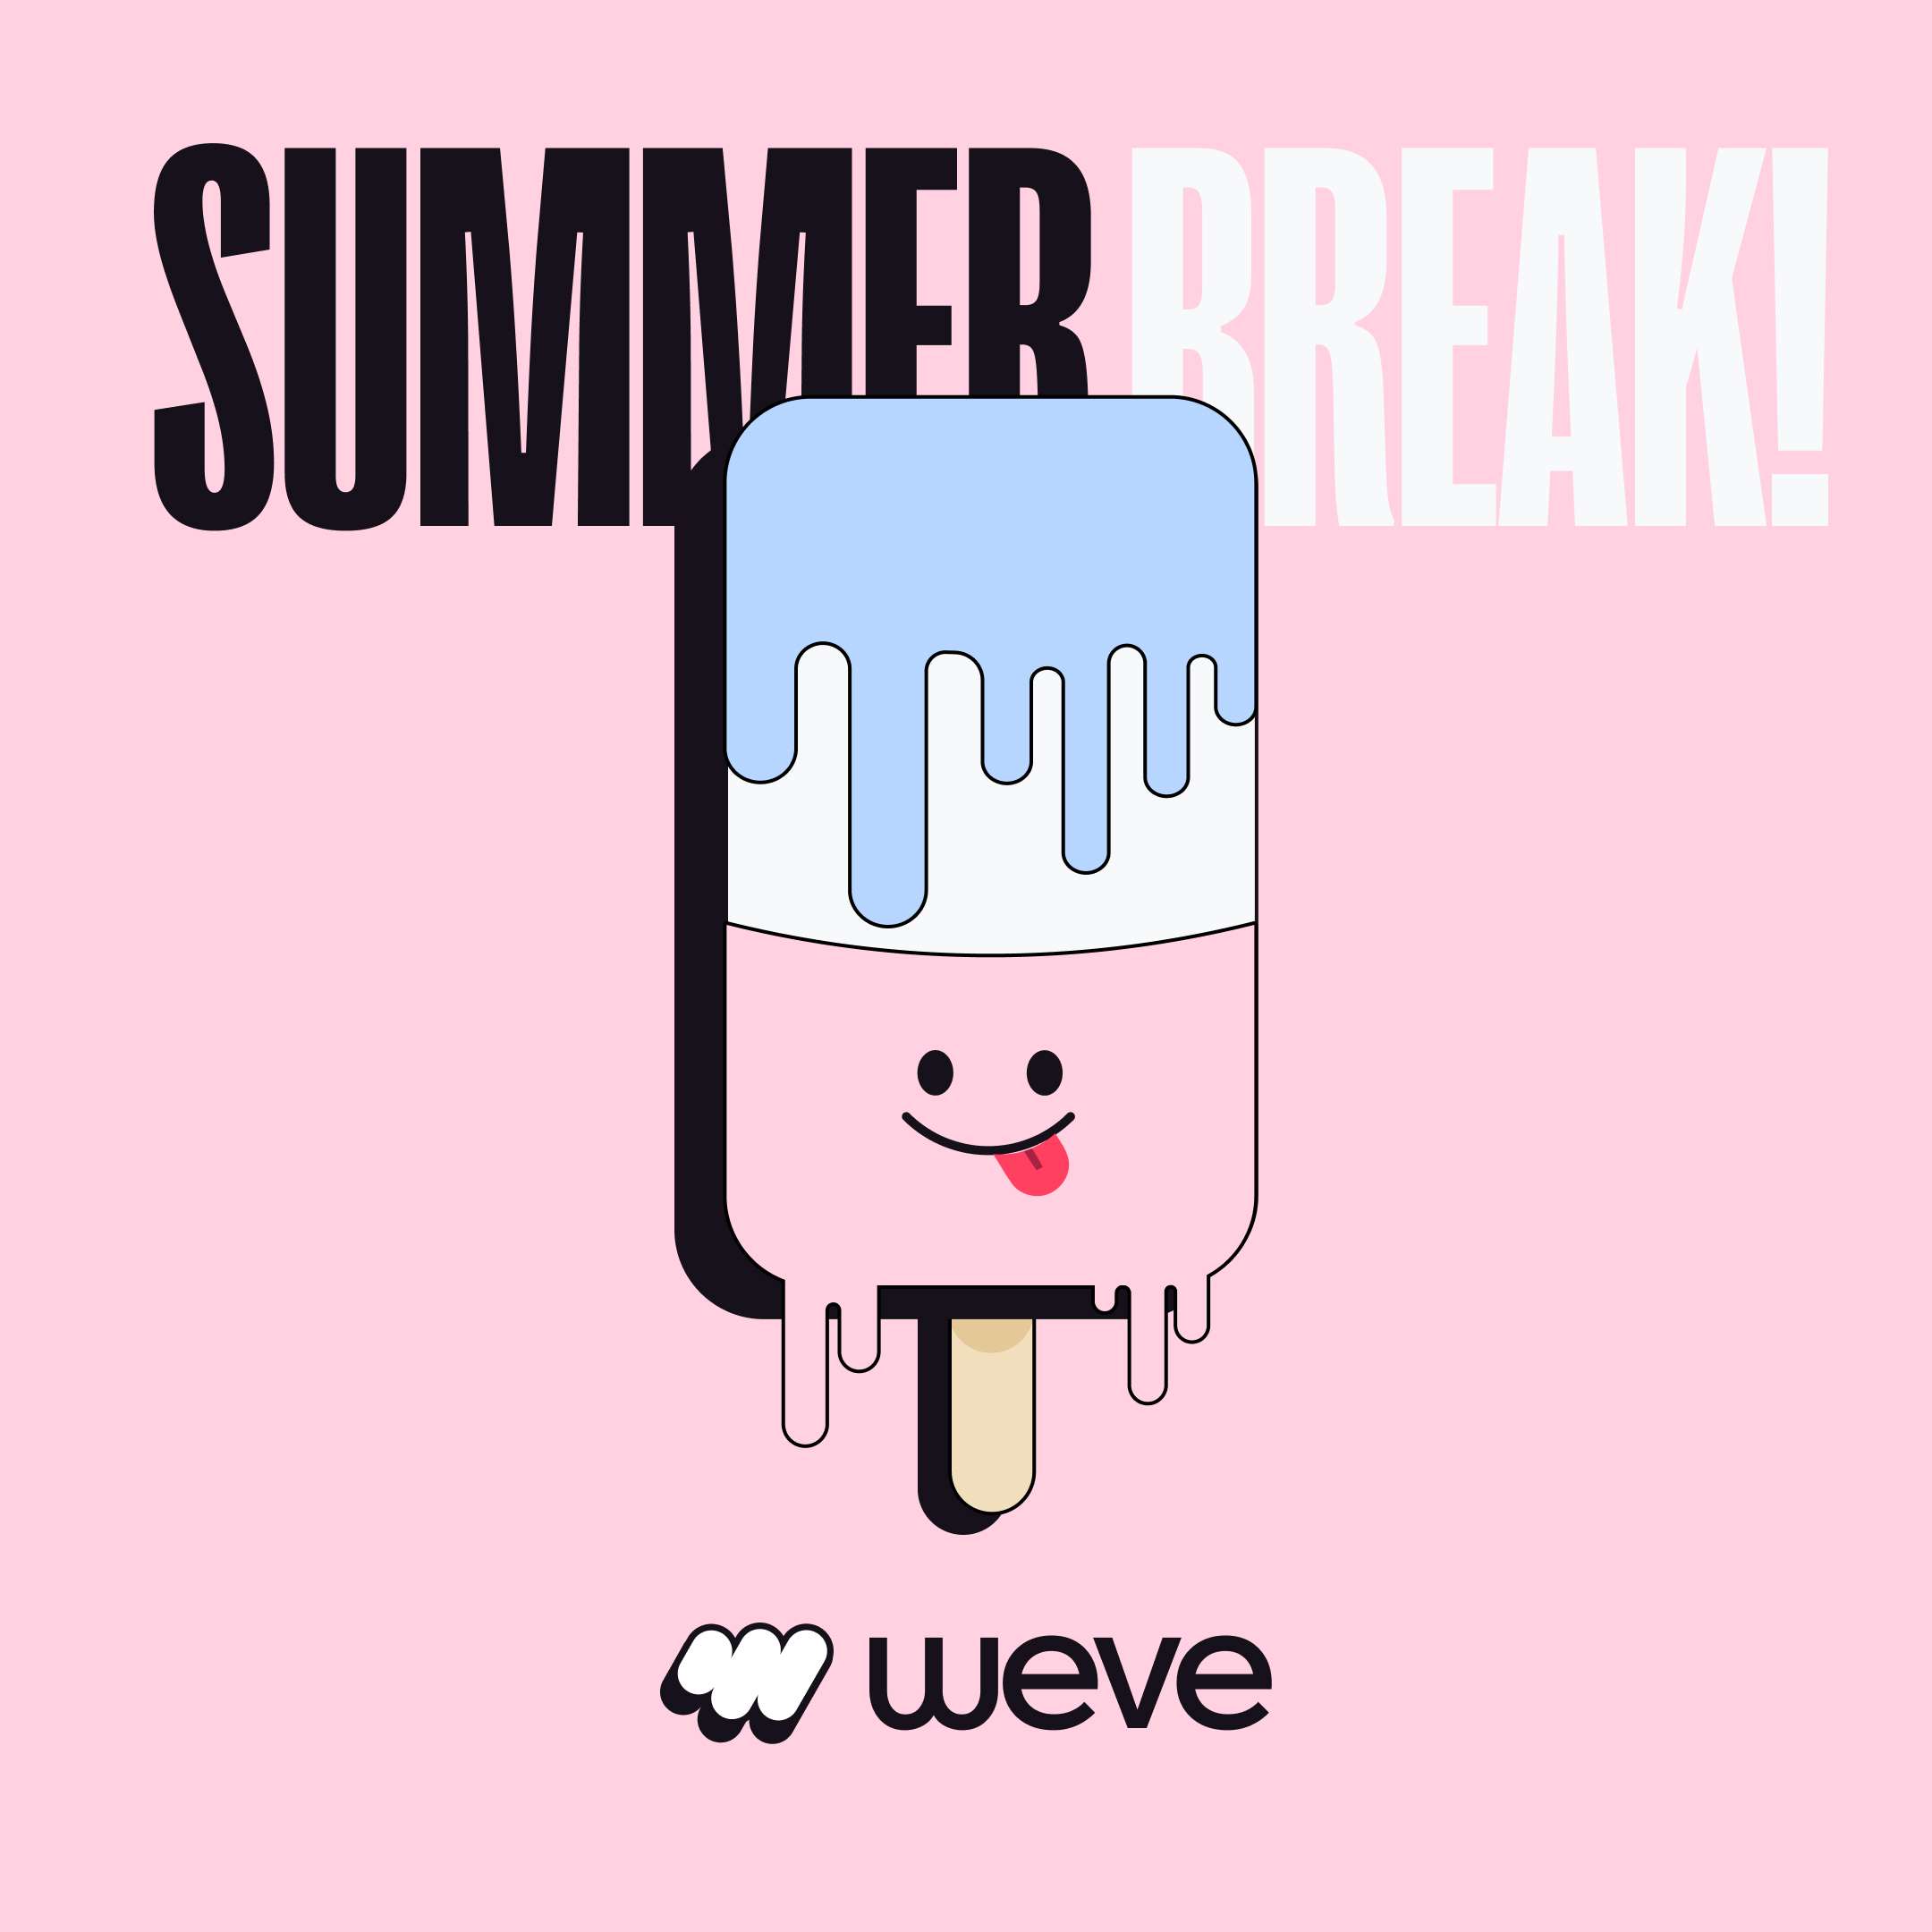 A Summer Break-1